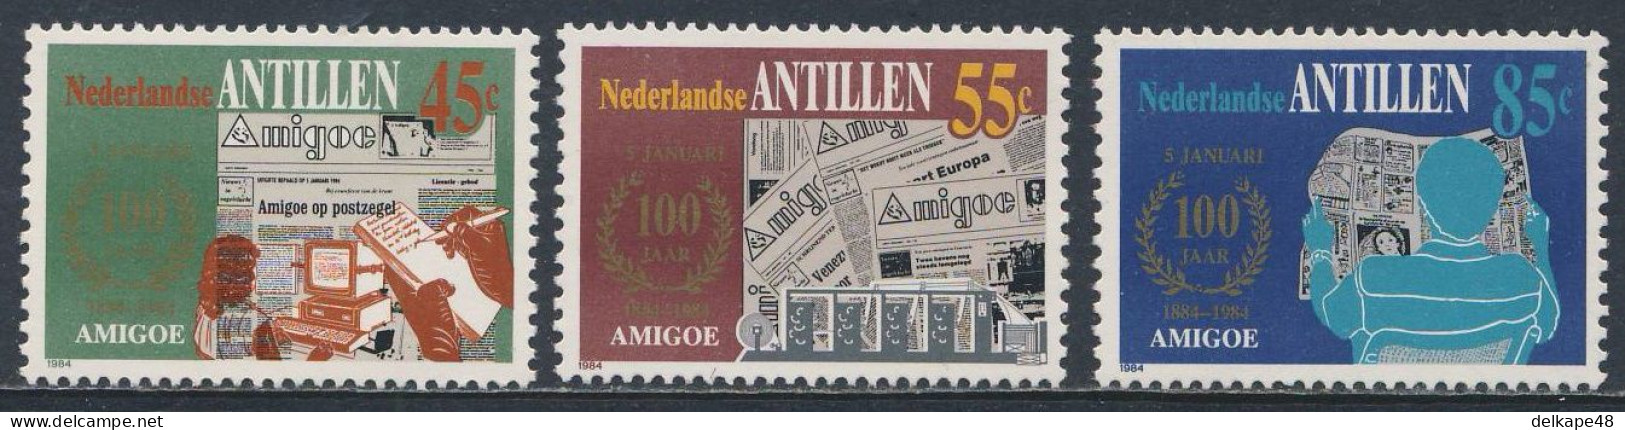 Nederlandse Antillen 1984 Mi 513 /5 YT 700 /2 SG 845 /7 ** Cent. "Amigoe De Curacao" - Newspaper / Zeitung / Journal - Usines & Industries